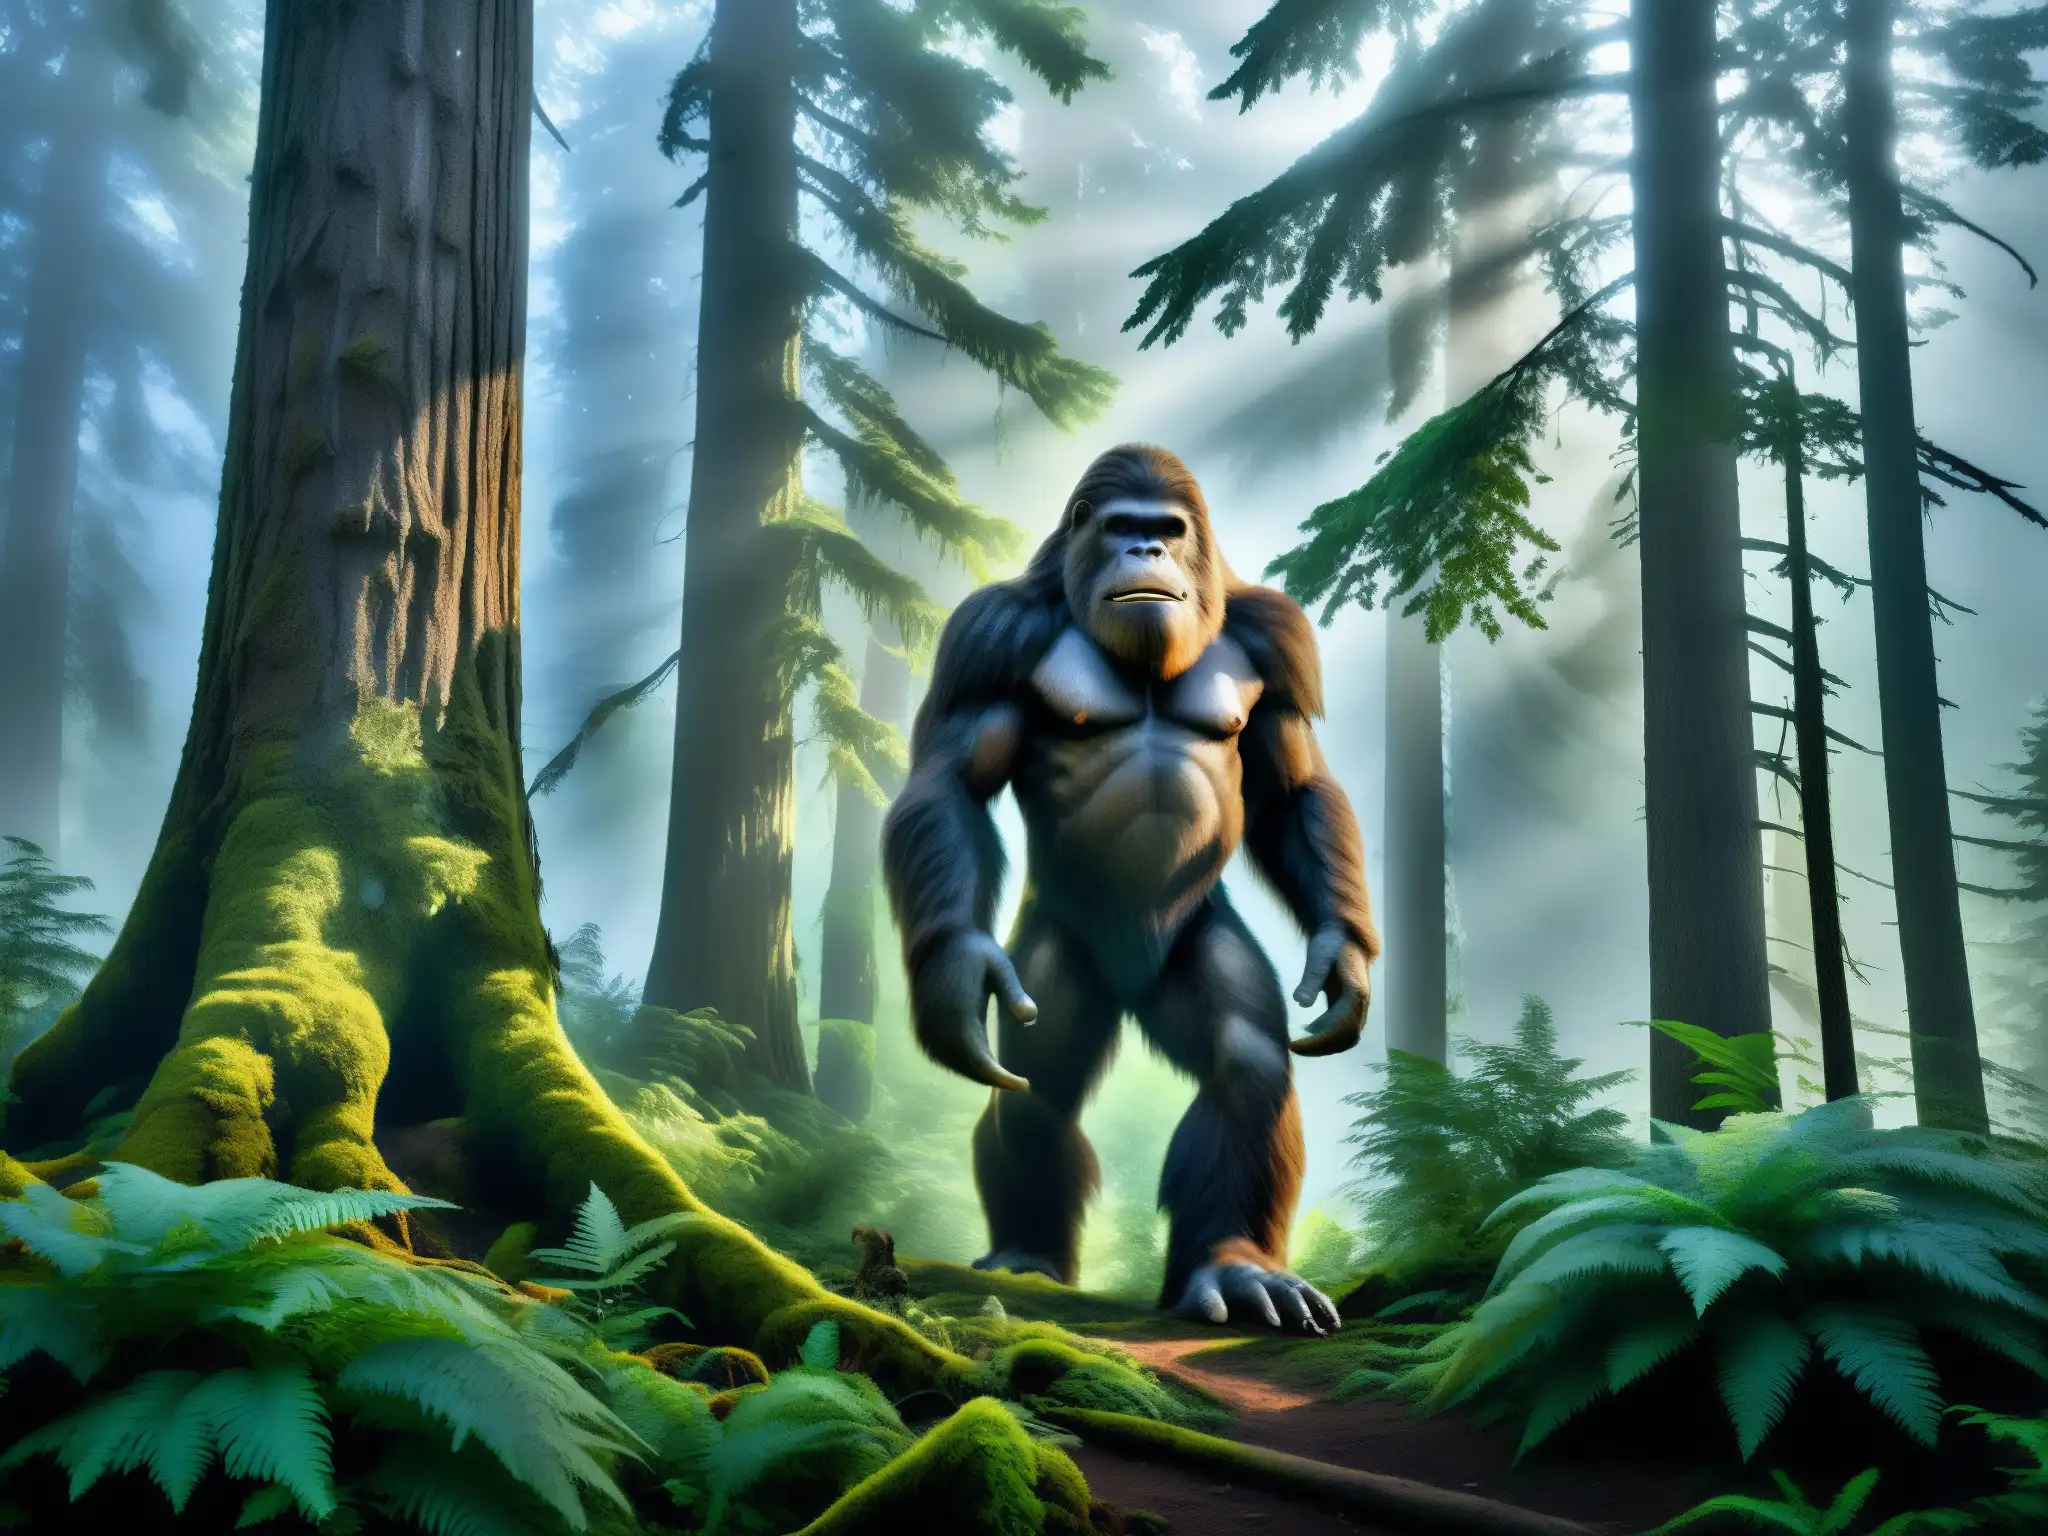 El mito del Bigfoot desenmascarado: Imagen detallada de un bosque neblinoso y misterioso, con árboles antiguos y atmósfera enigmática